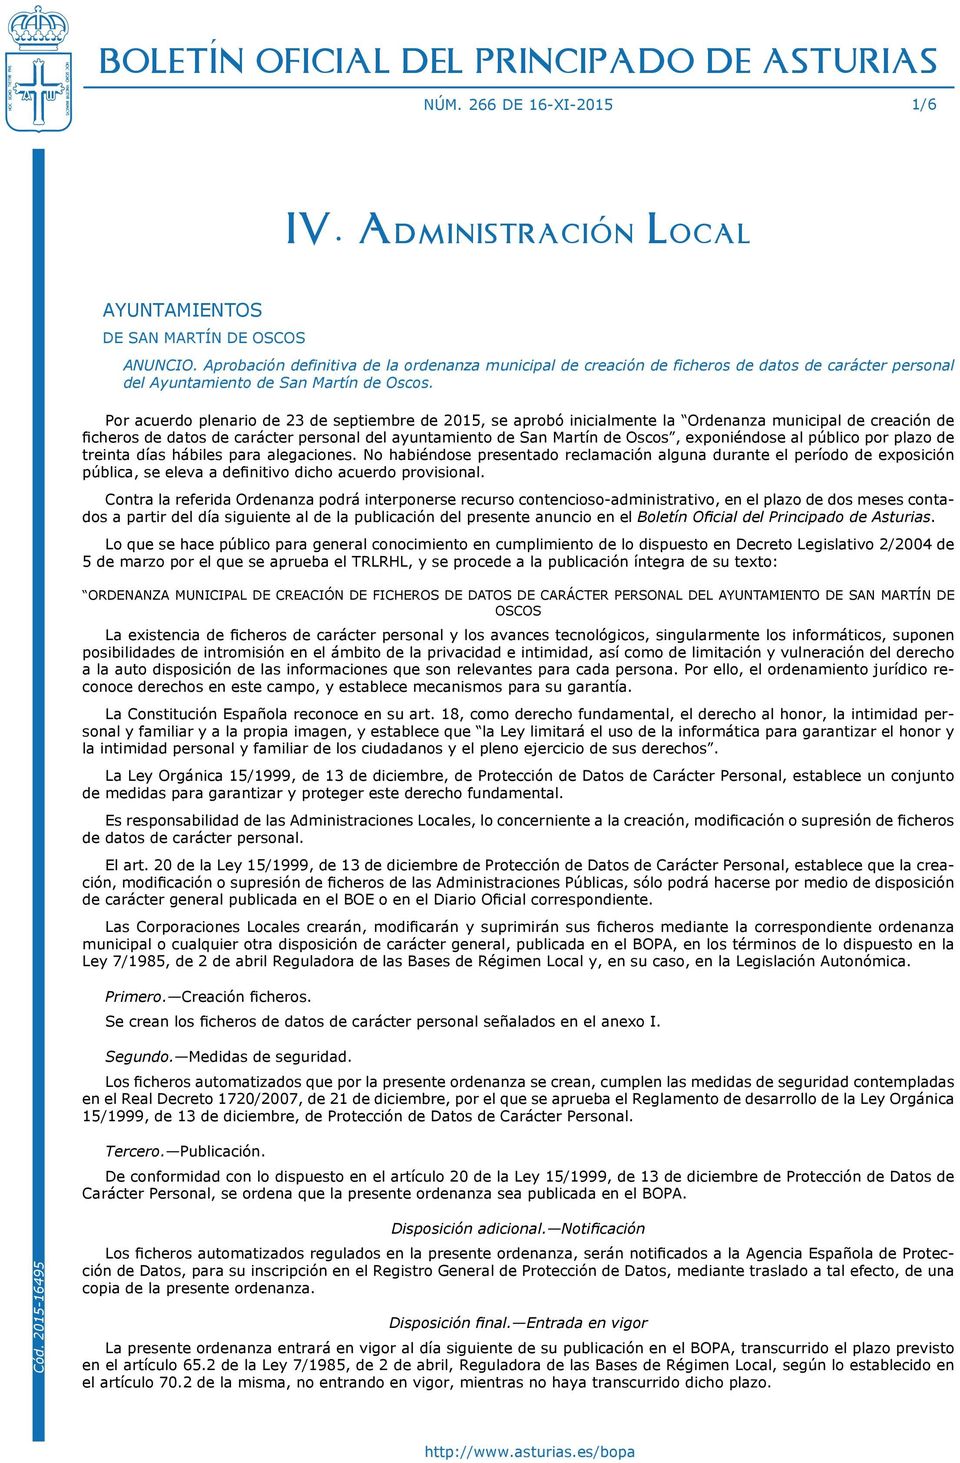 Por acuerdo plenario de 23 de septiembre de 2015, se aprobó inicialmente la Ordenanza municipal de creación de ficheros de datos de carácter personal del ayuntamiento de San Martín de Oscos,